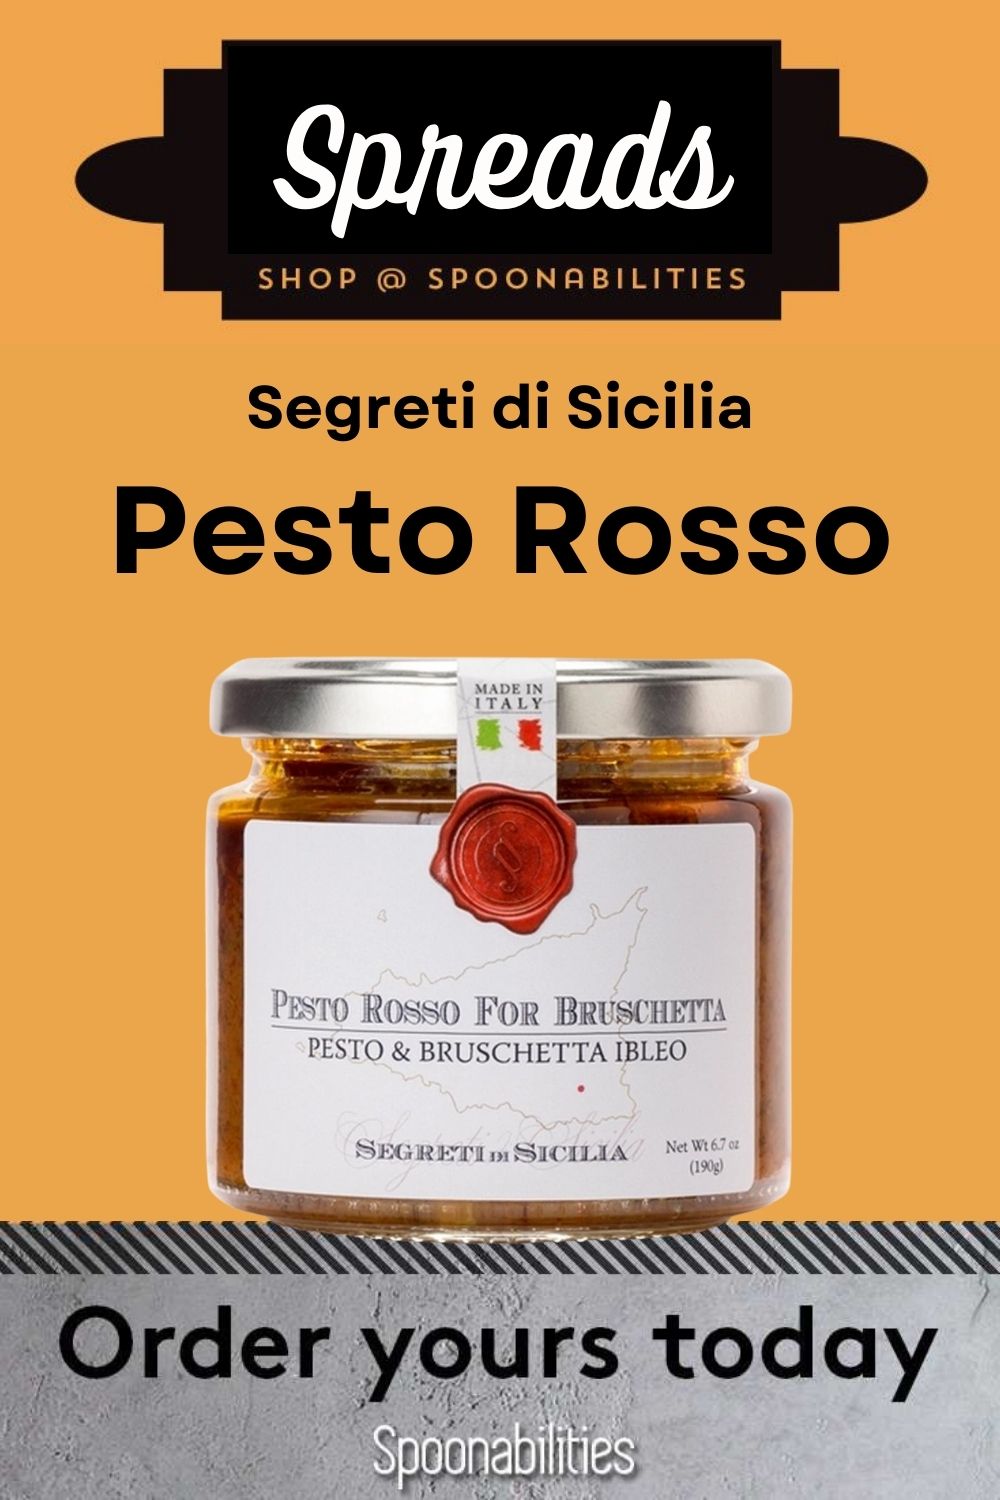 Pesto Rosso for Bruschetta